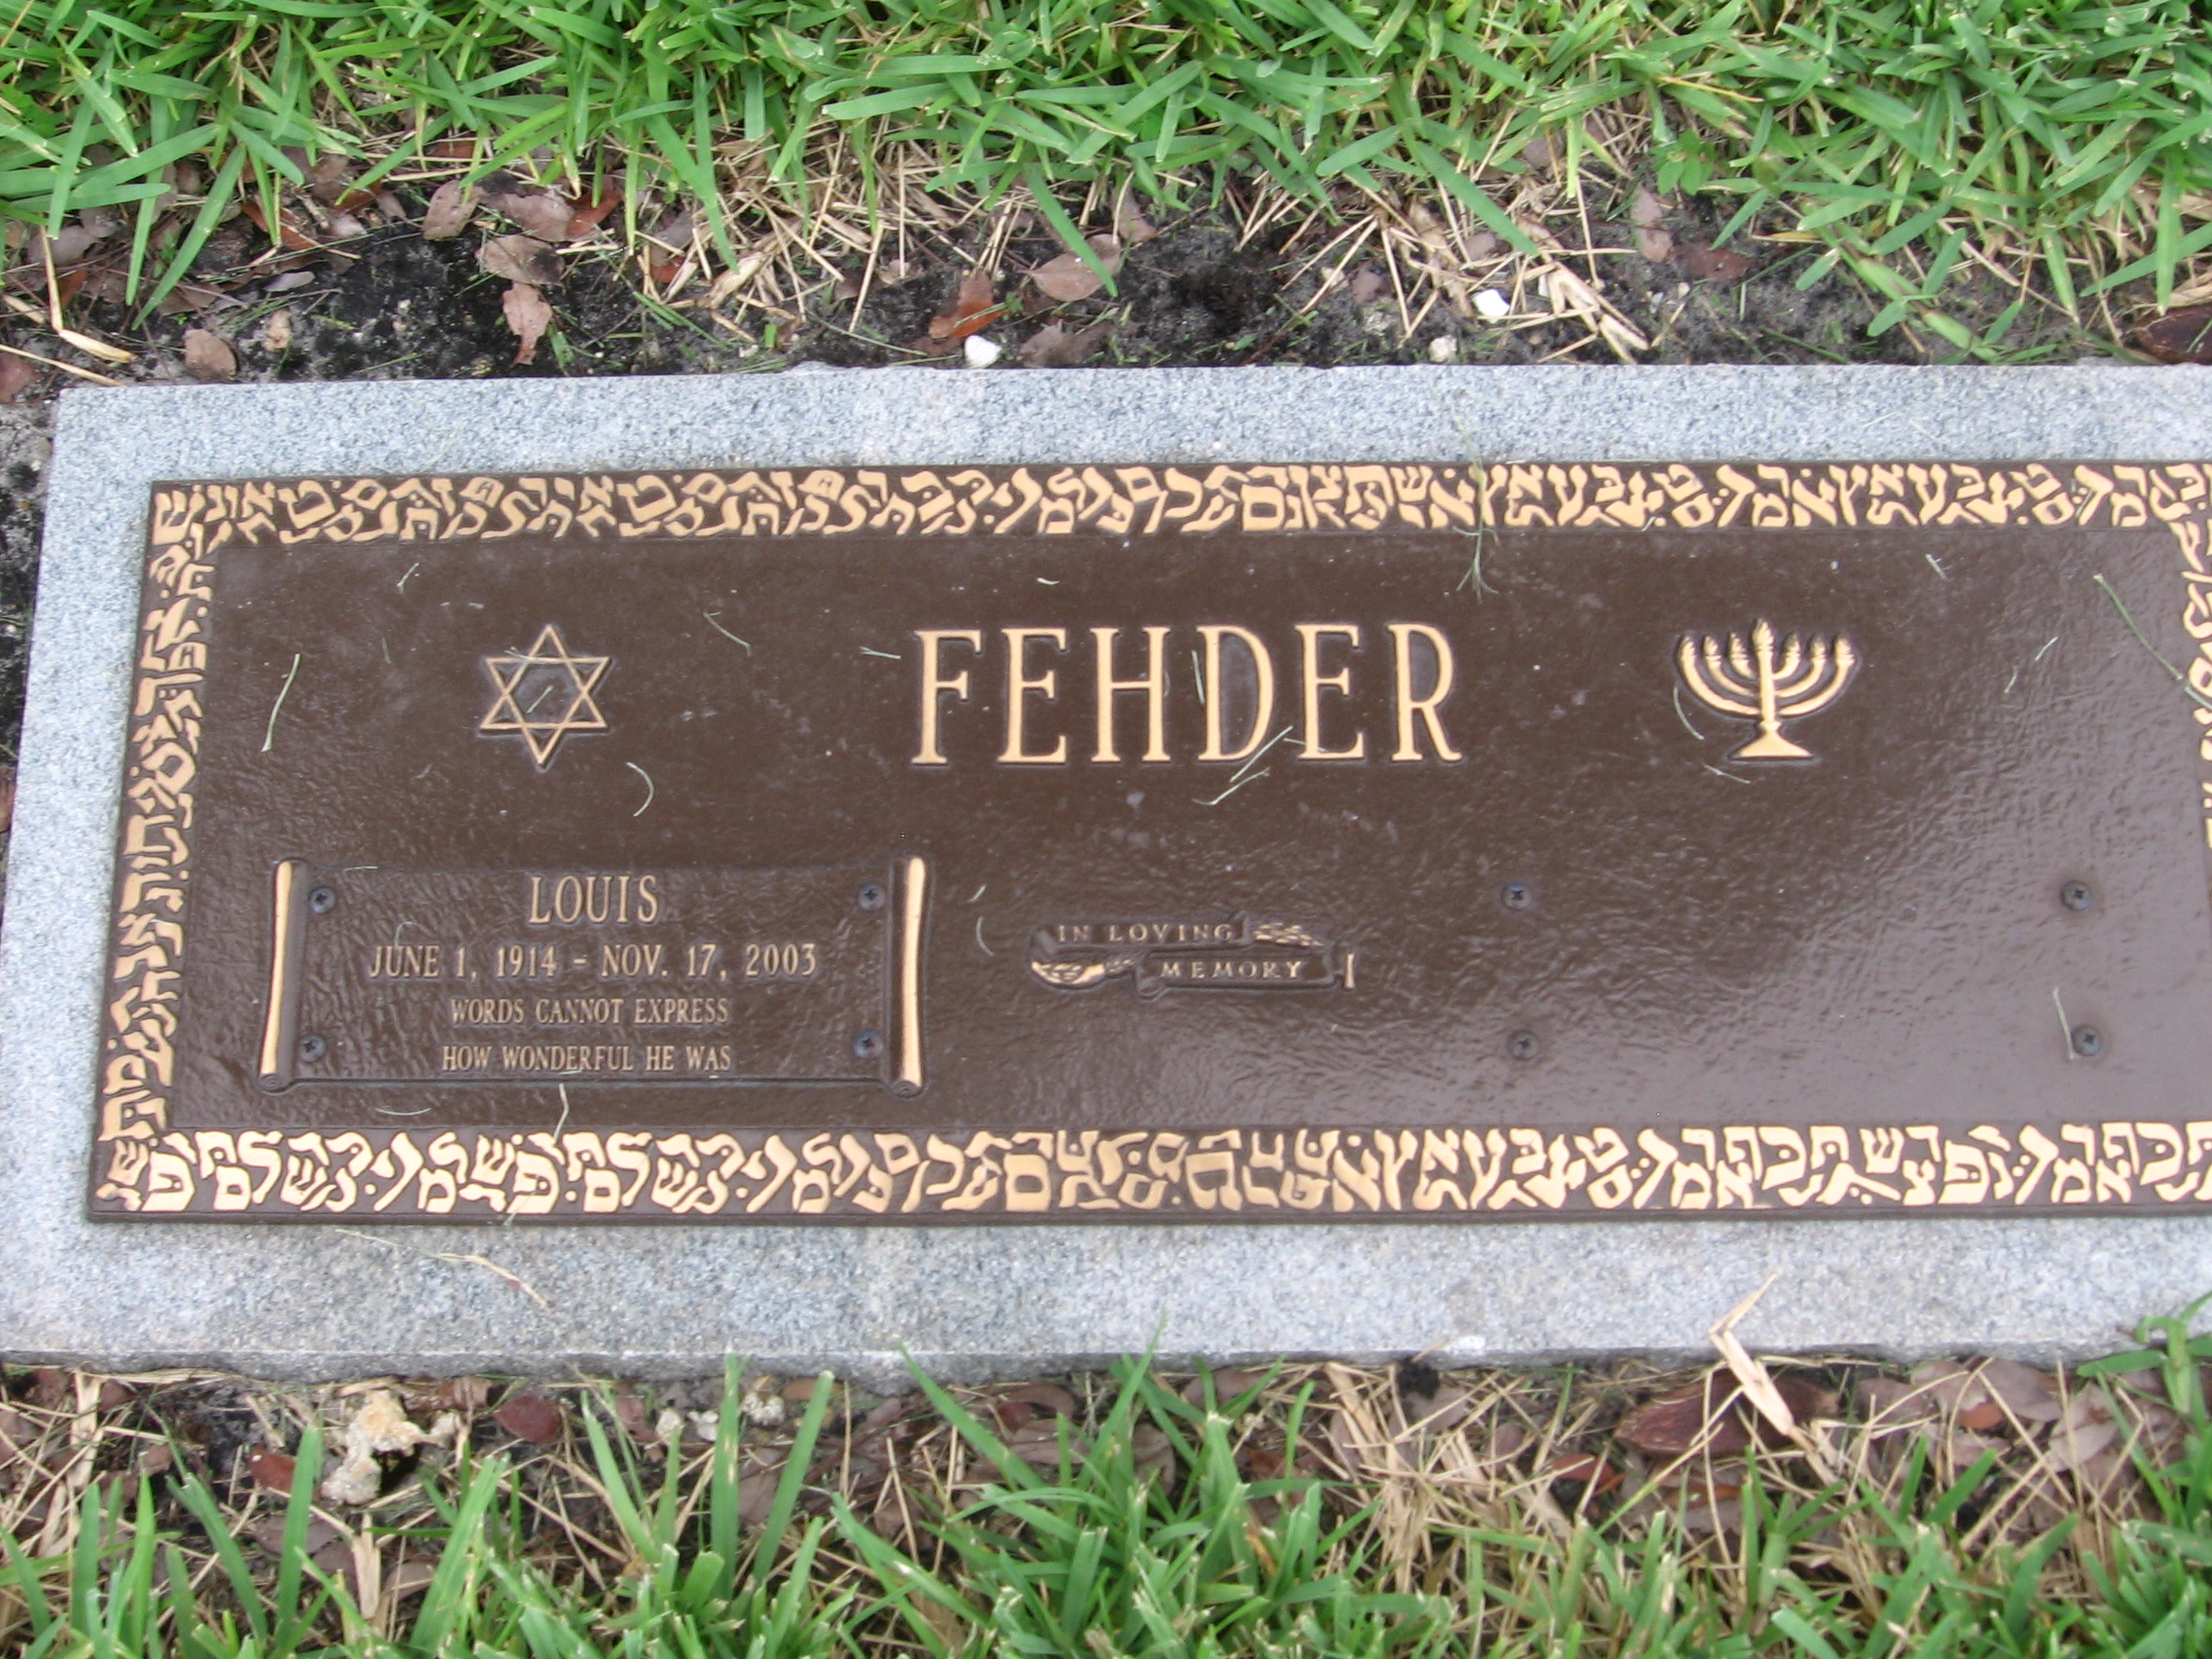 Louis Fehder